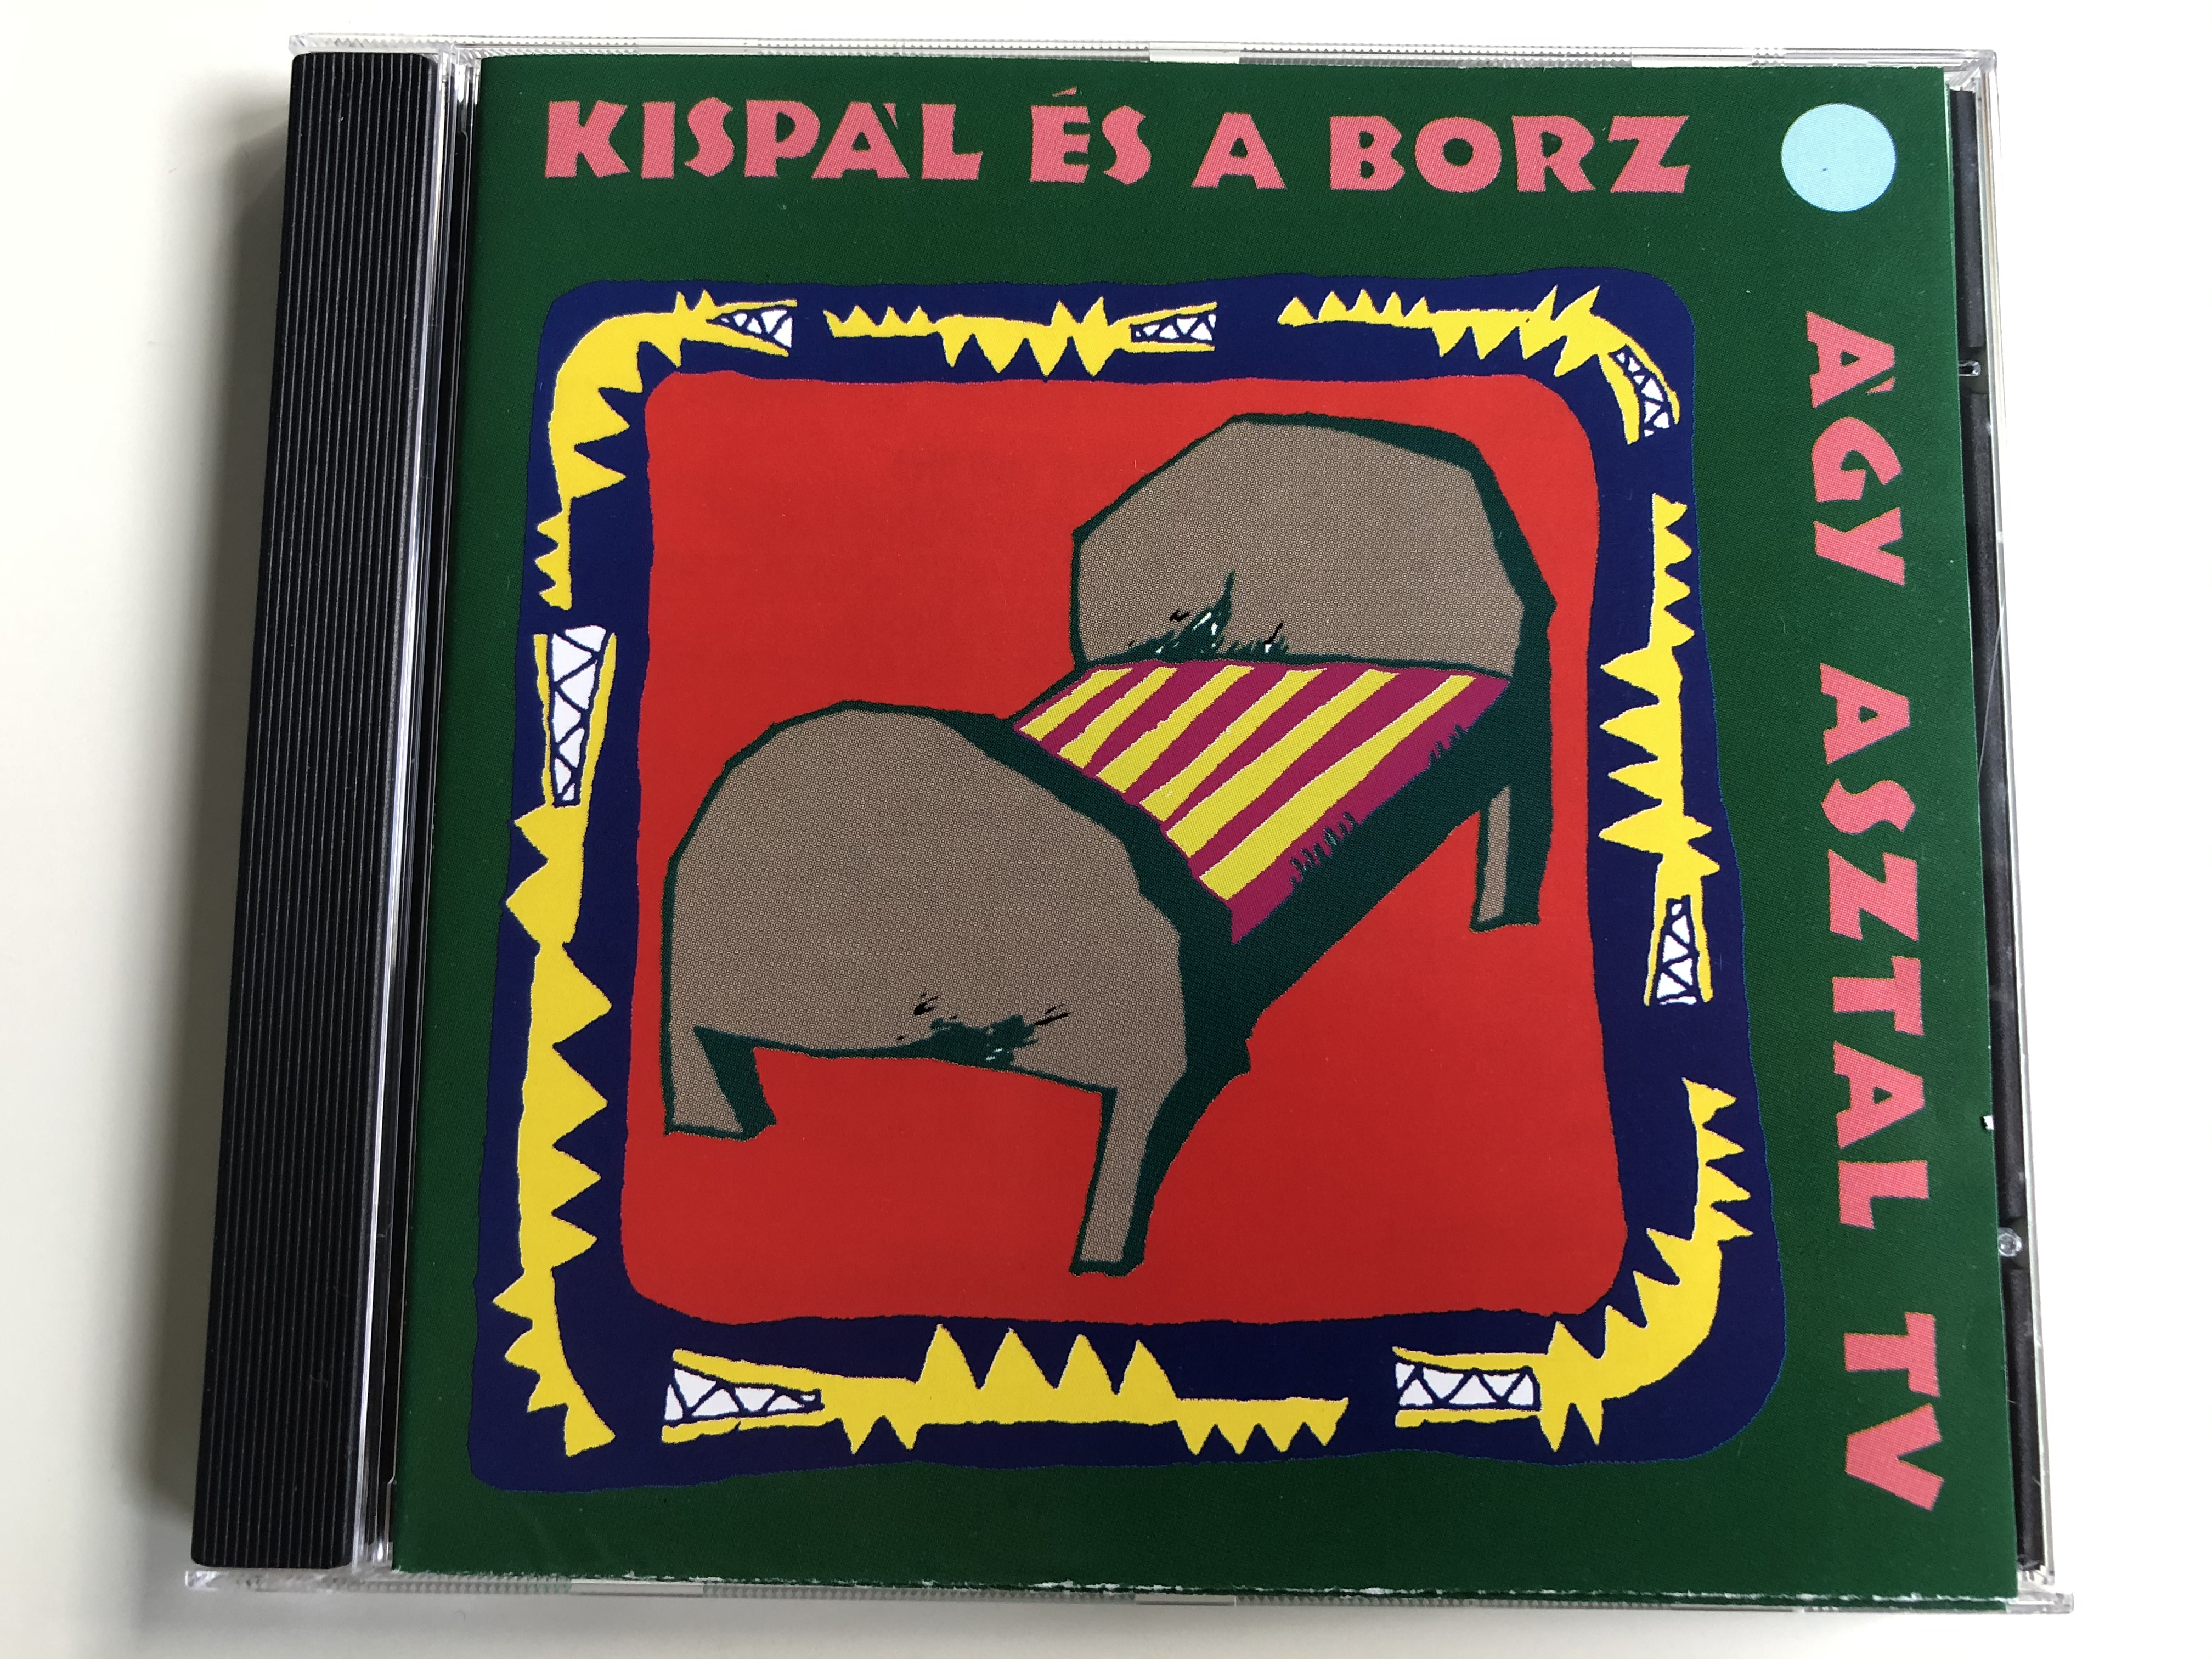 kisp-l-s-a-borz-gy-asztal-tv-3t-audio-cd-1994-523-249-2-1-.jpg